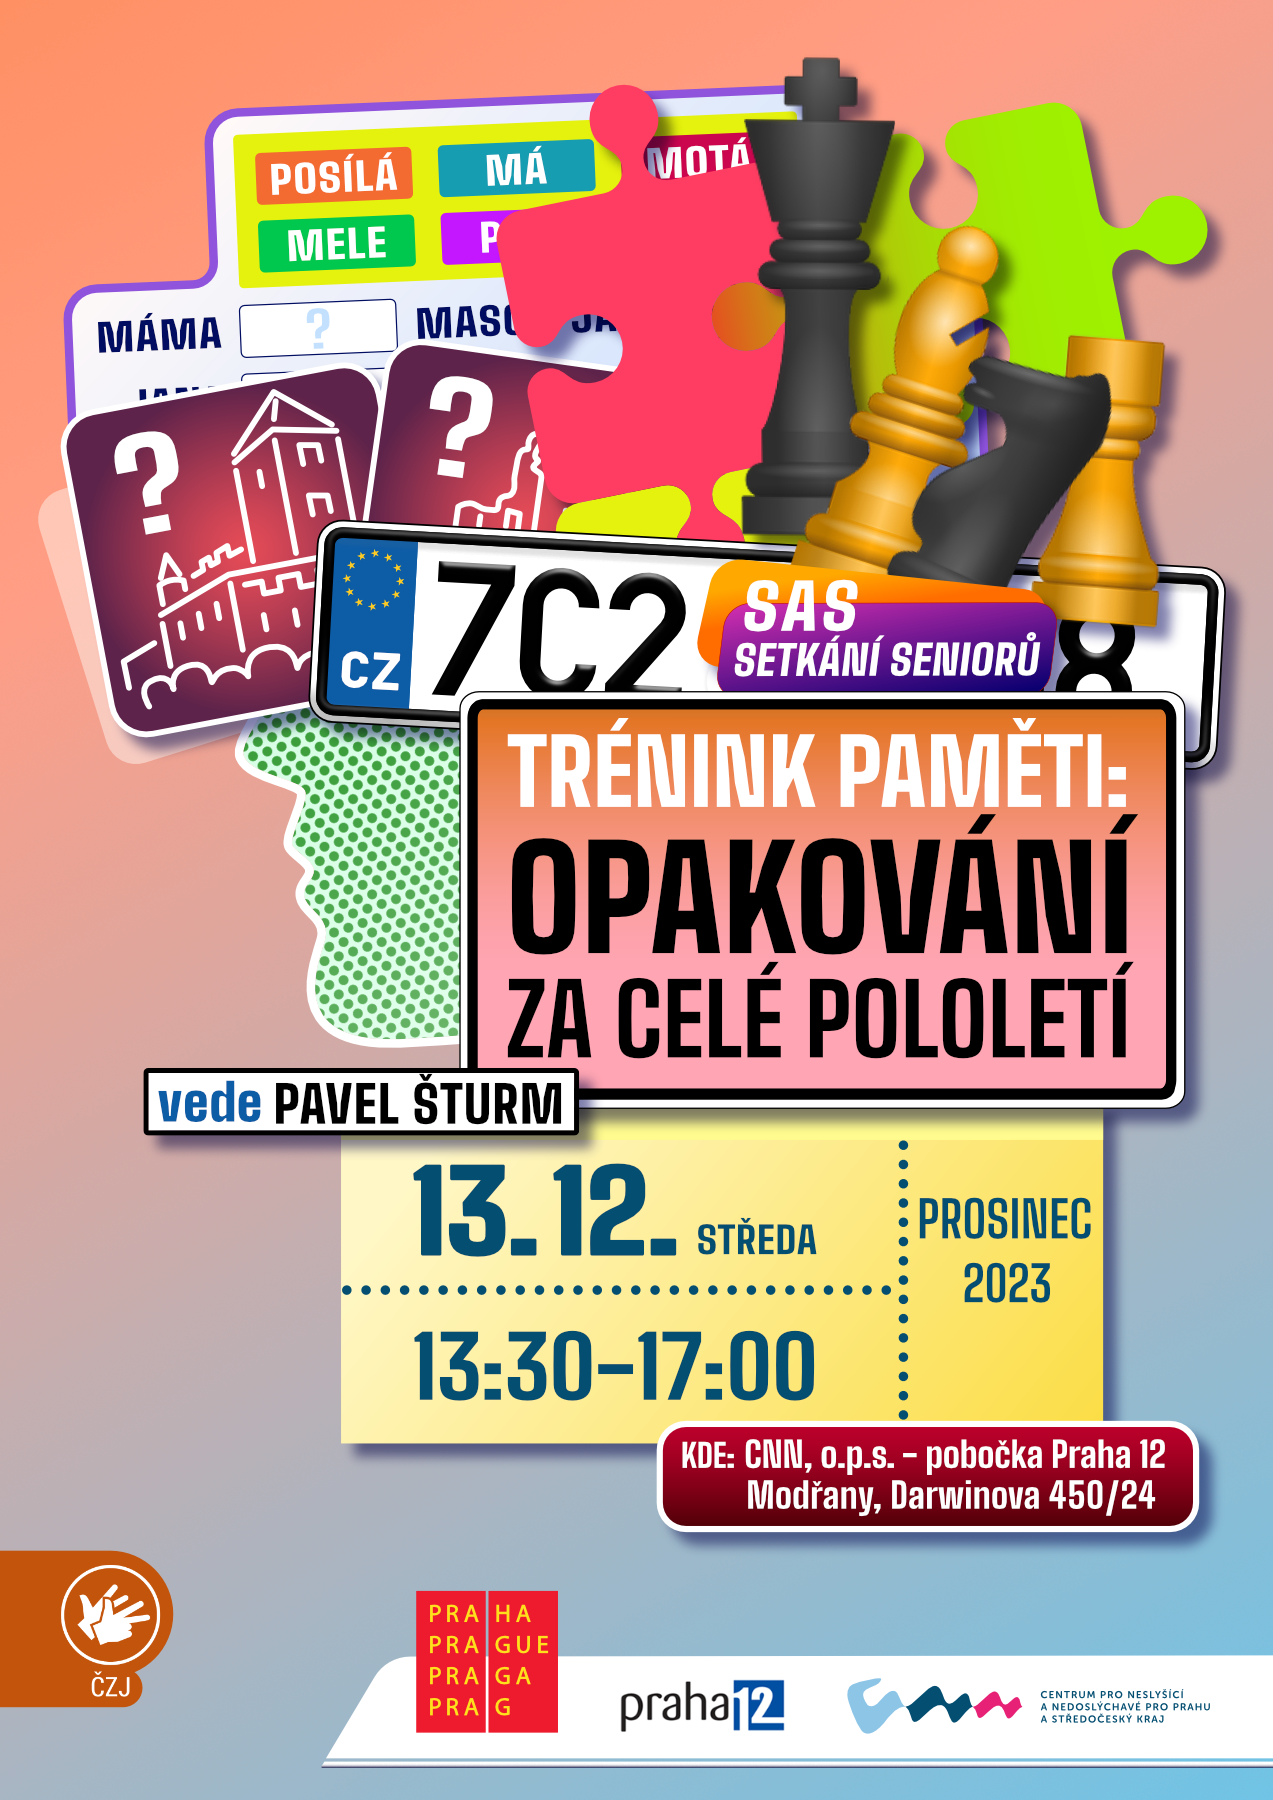 Trenink_pameti_opakovani_za_cele_pololeti_2023_FB-2.jpg